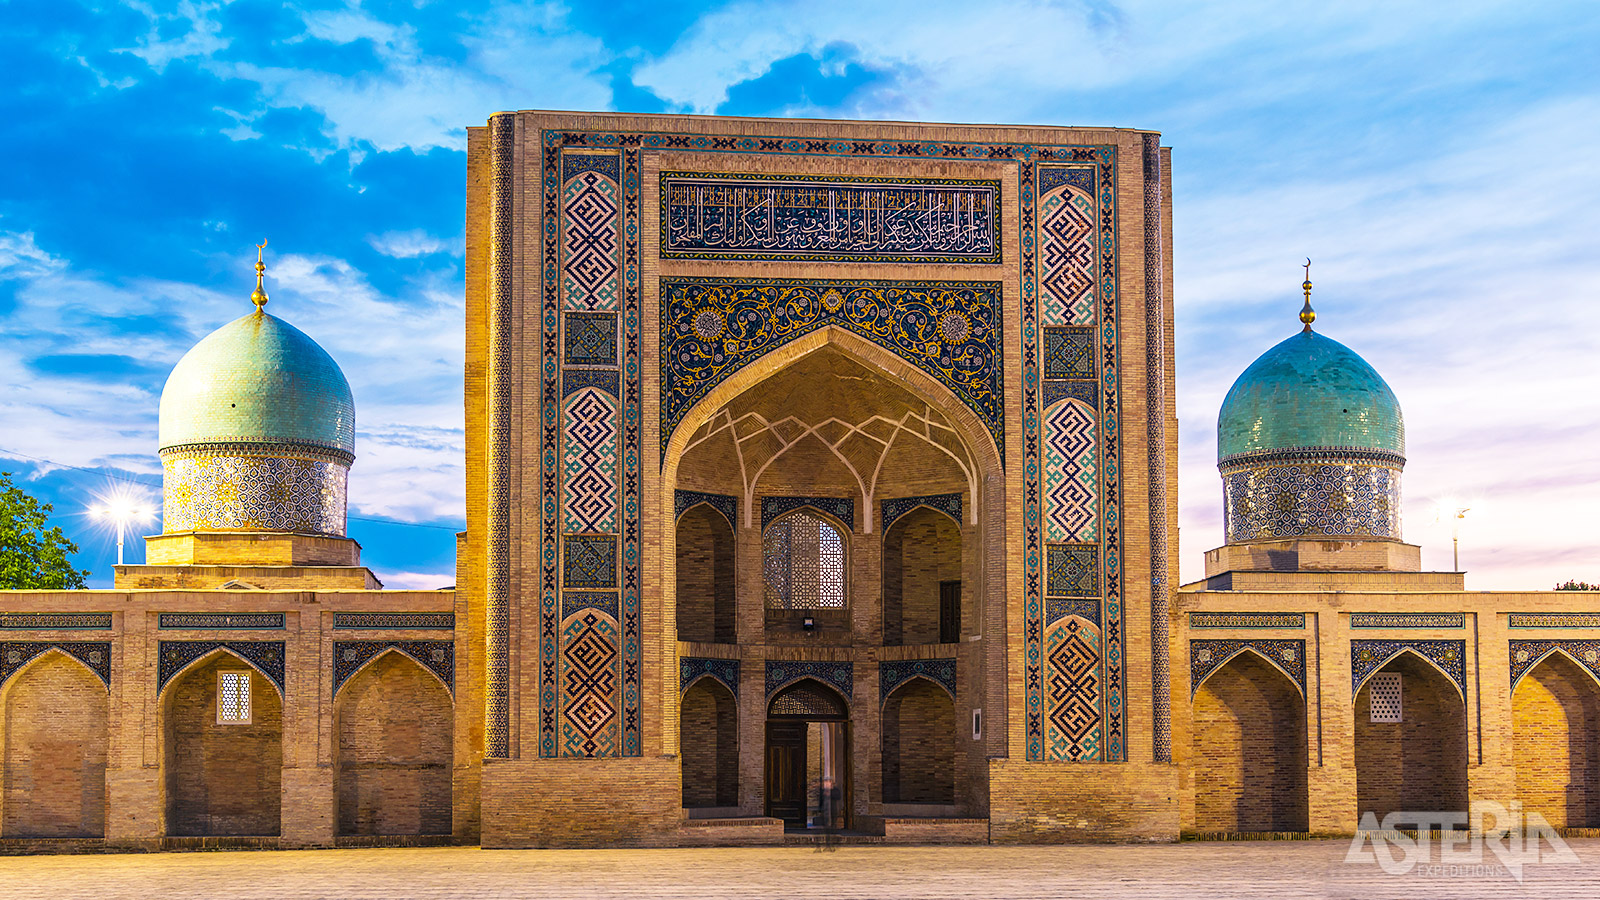 Het prachtige Khast Imam complex in Tasjkent omvat een madrassah, moskee  en mausoleum